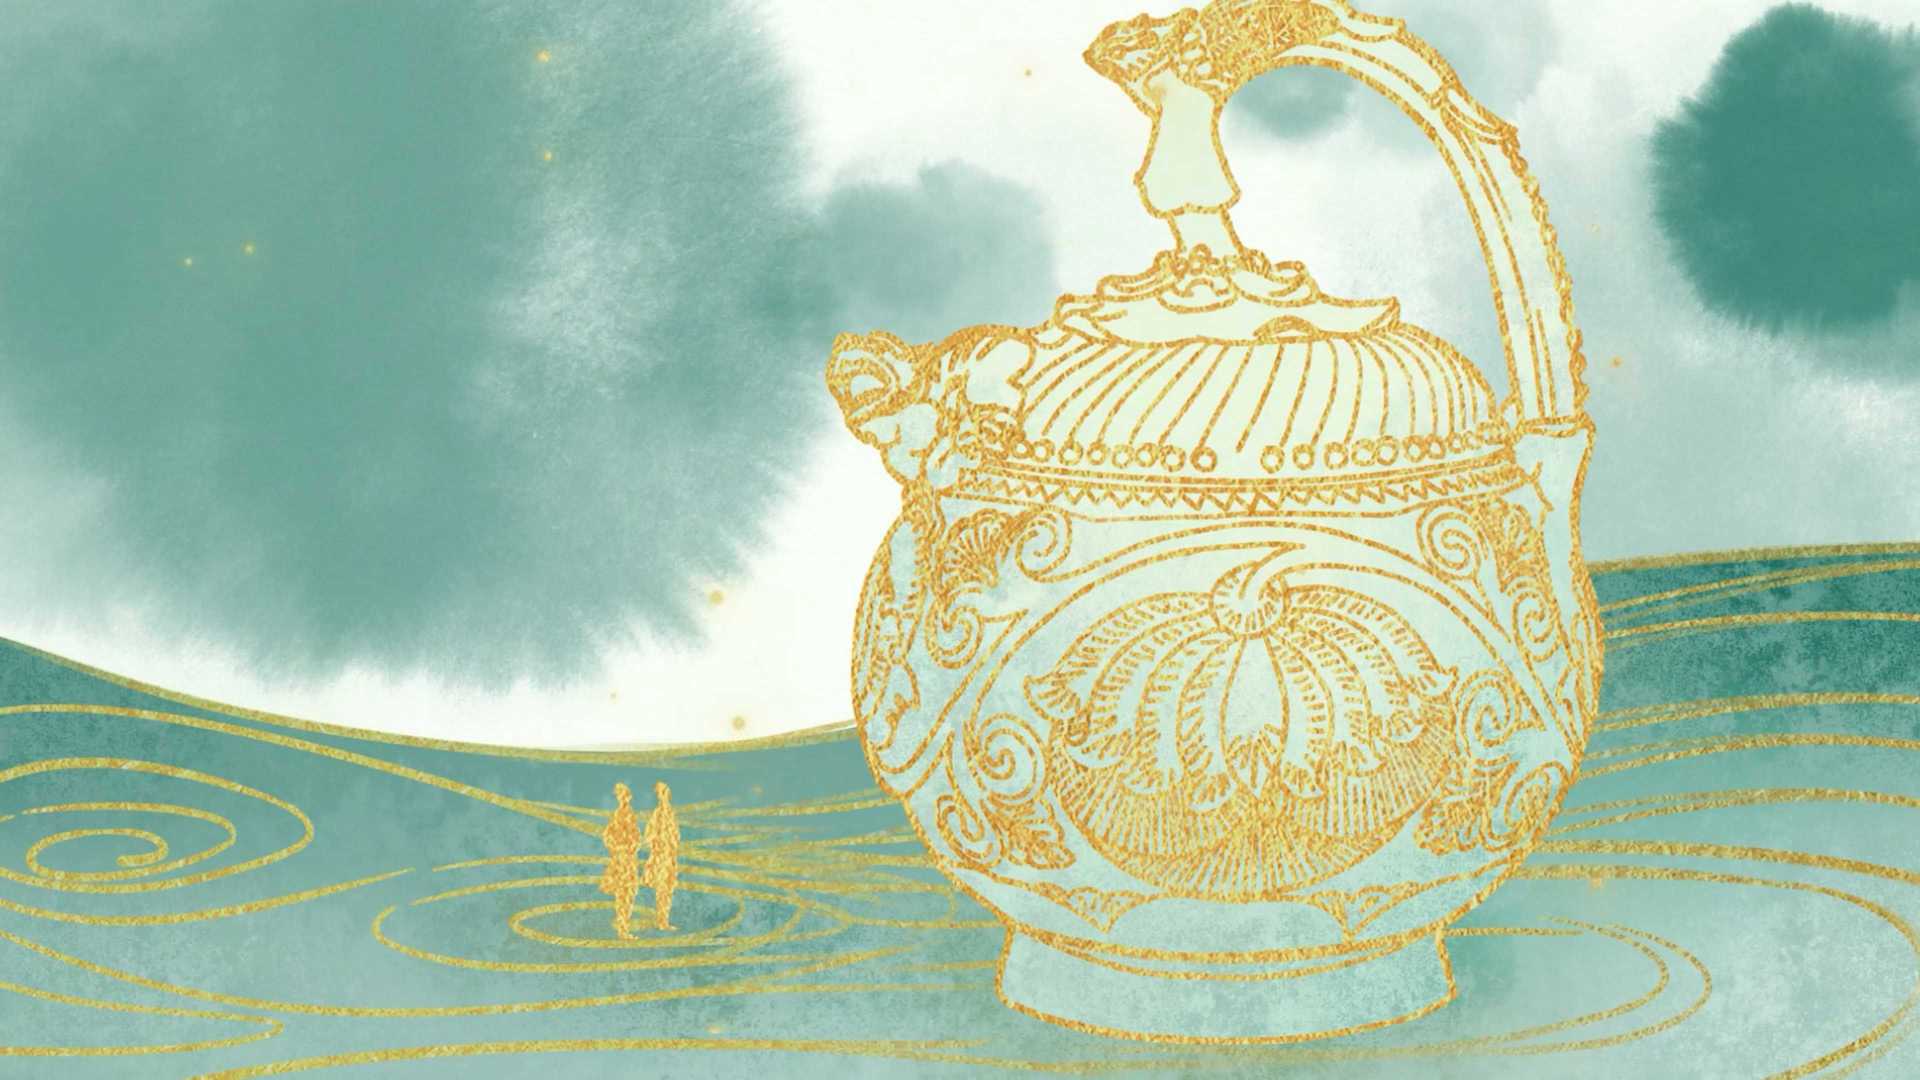 网易有道×陕西博物馆 科普纪录片《国宝里的中国故事》——青瓷提梁倒灌壶